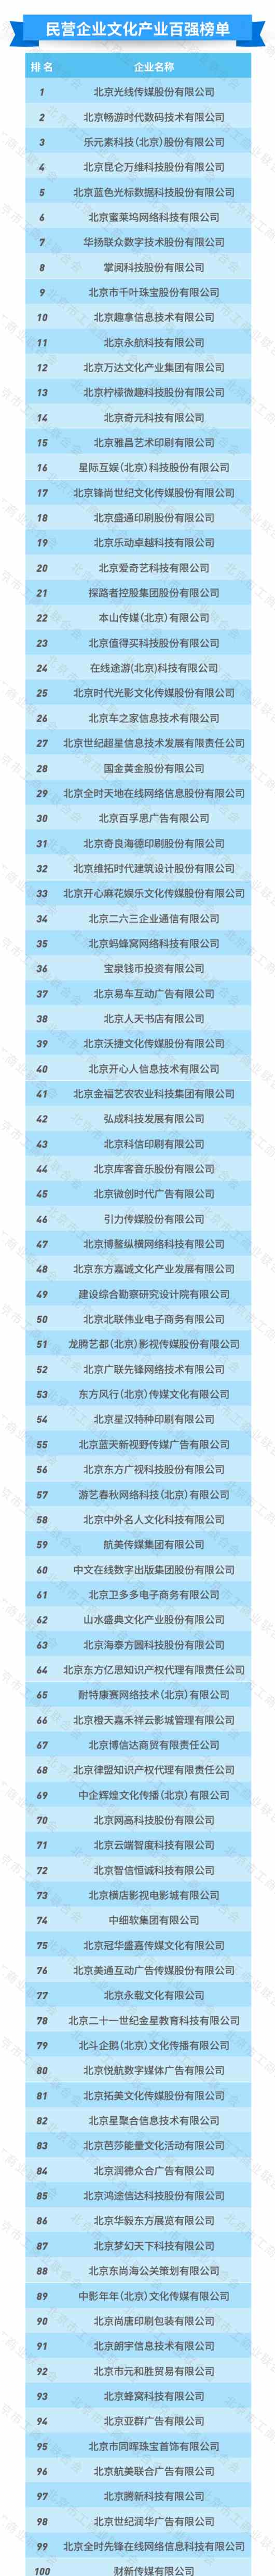 2020北京民营企业百强一览 京东联想国美位列前3